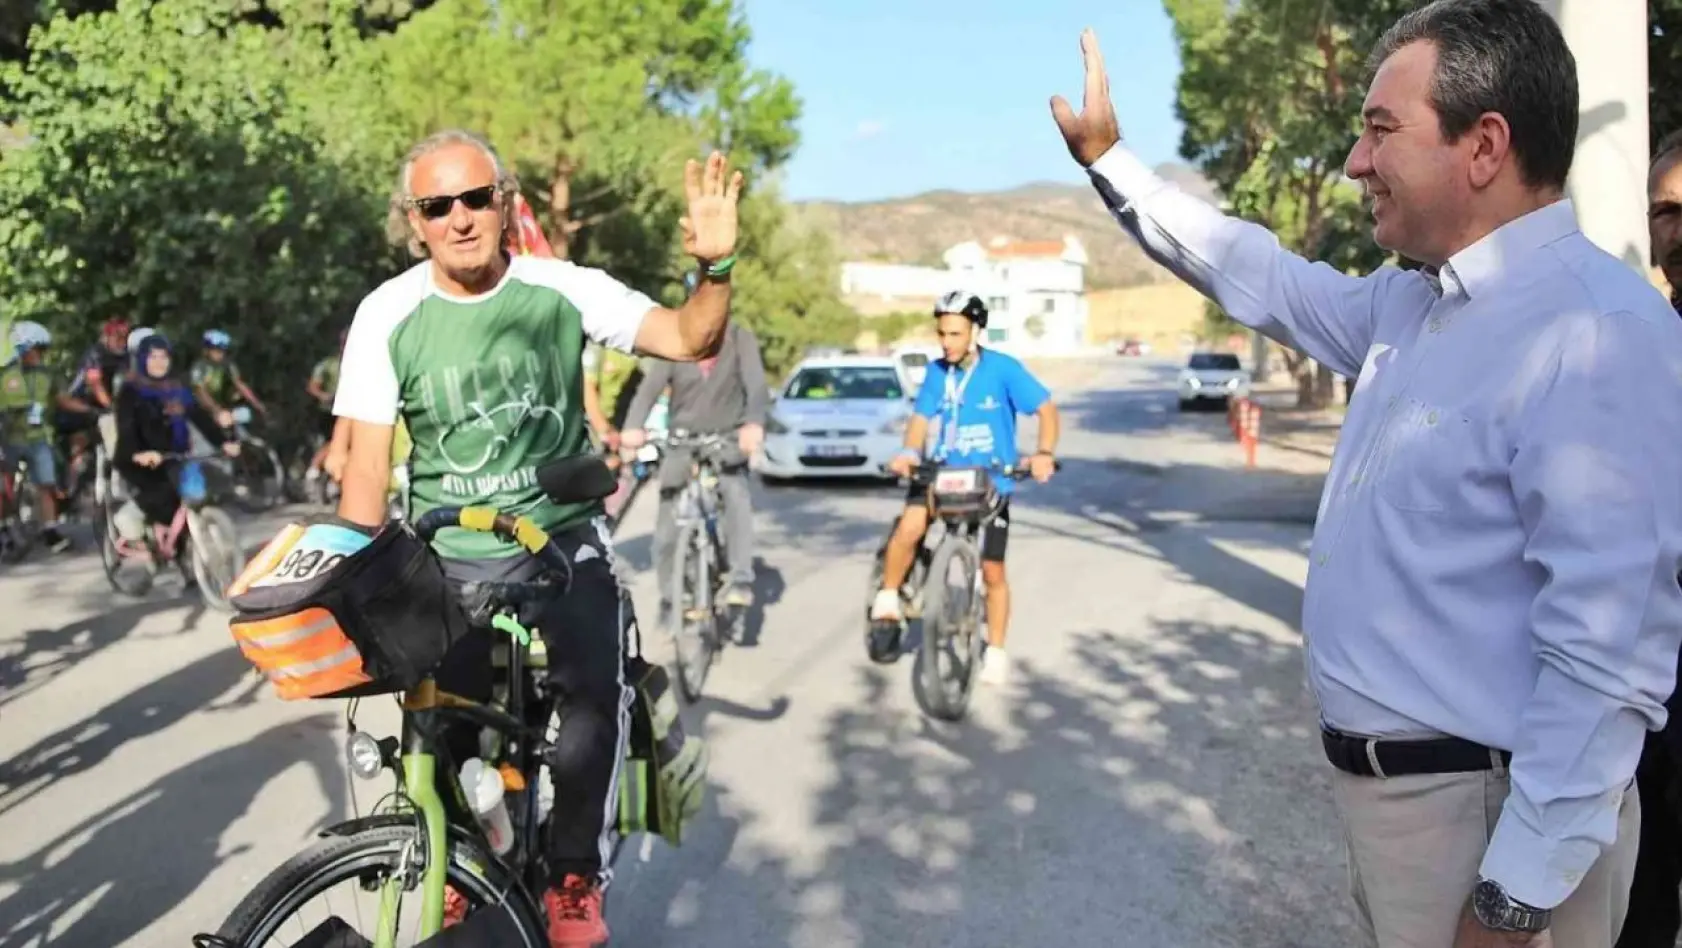 Bergama'nın ilk bisiklet festivali için start verildi